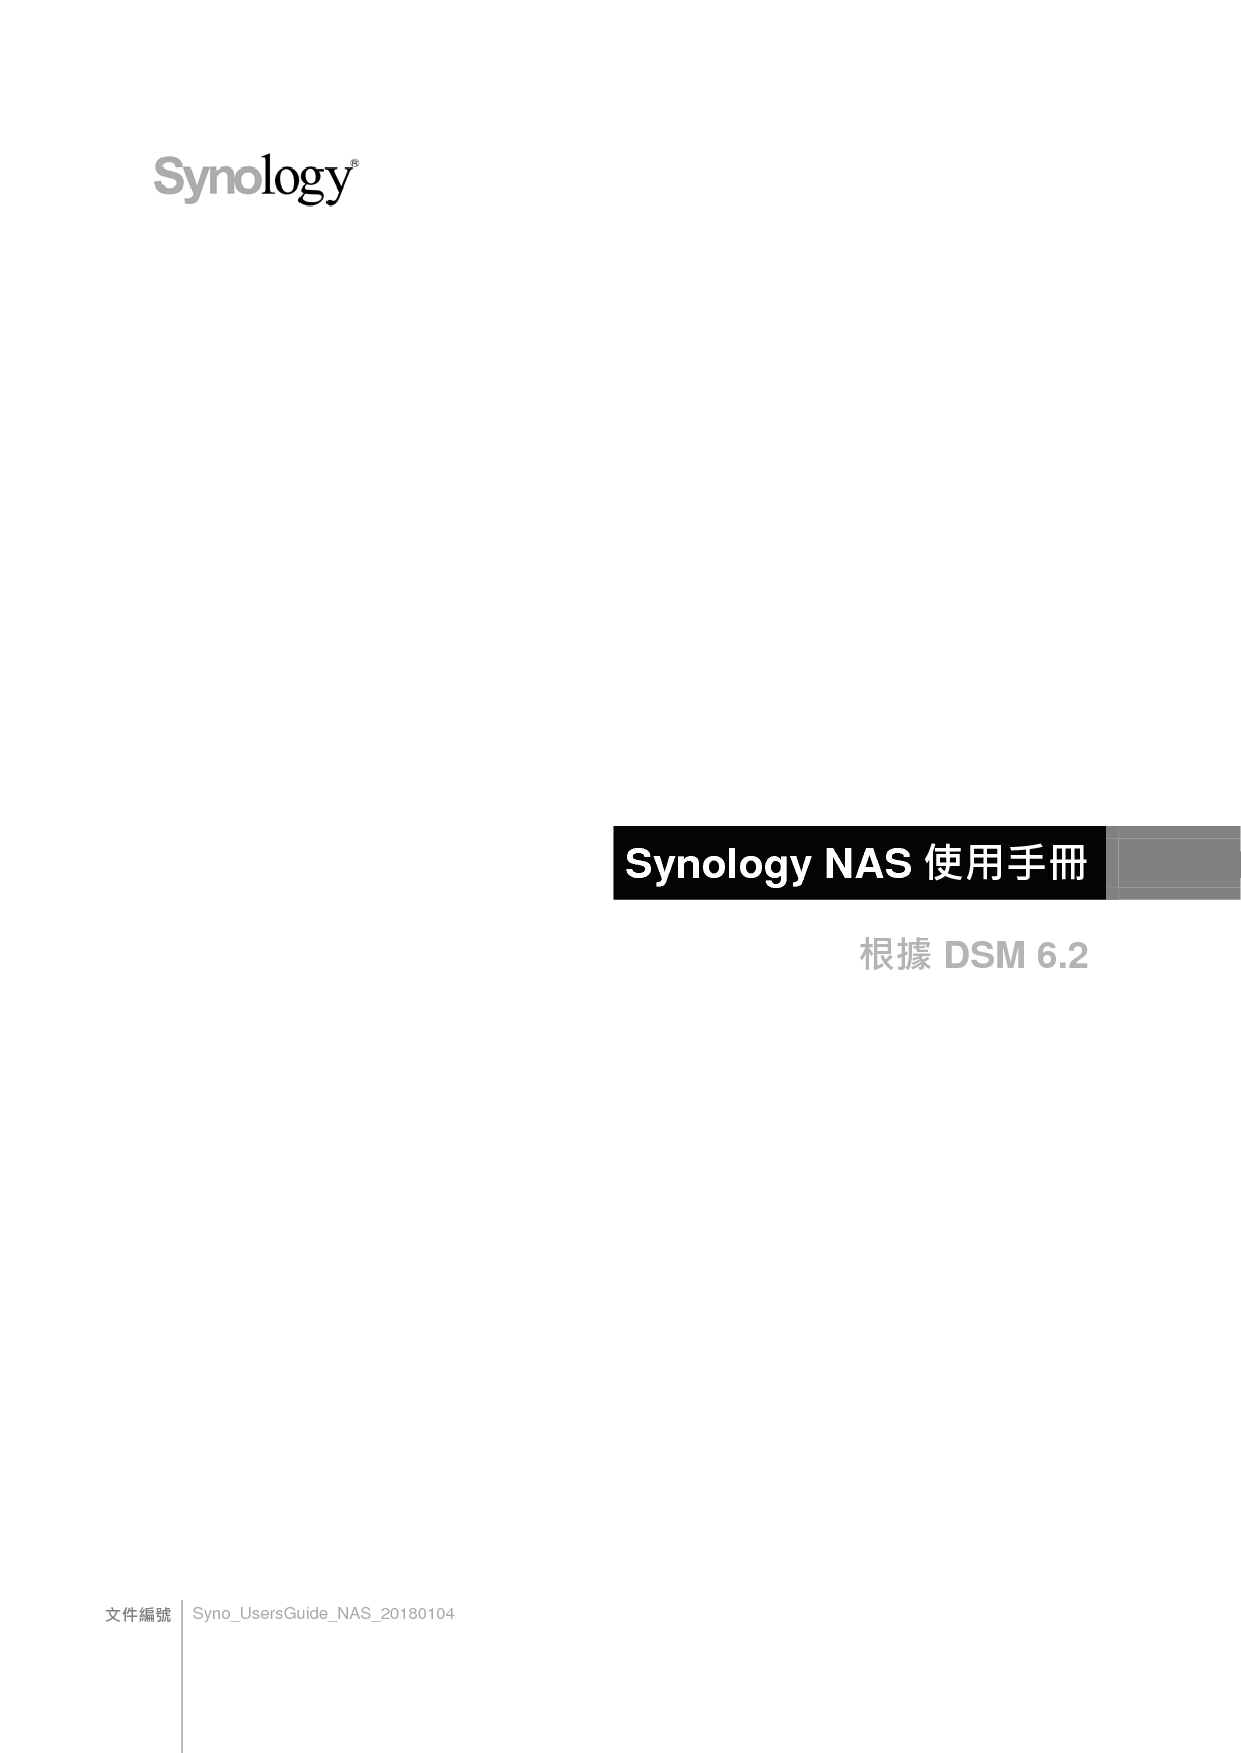 群晖 Synology NAS DSM 6.2 繁体 用户指南 封面